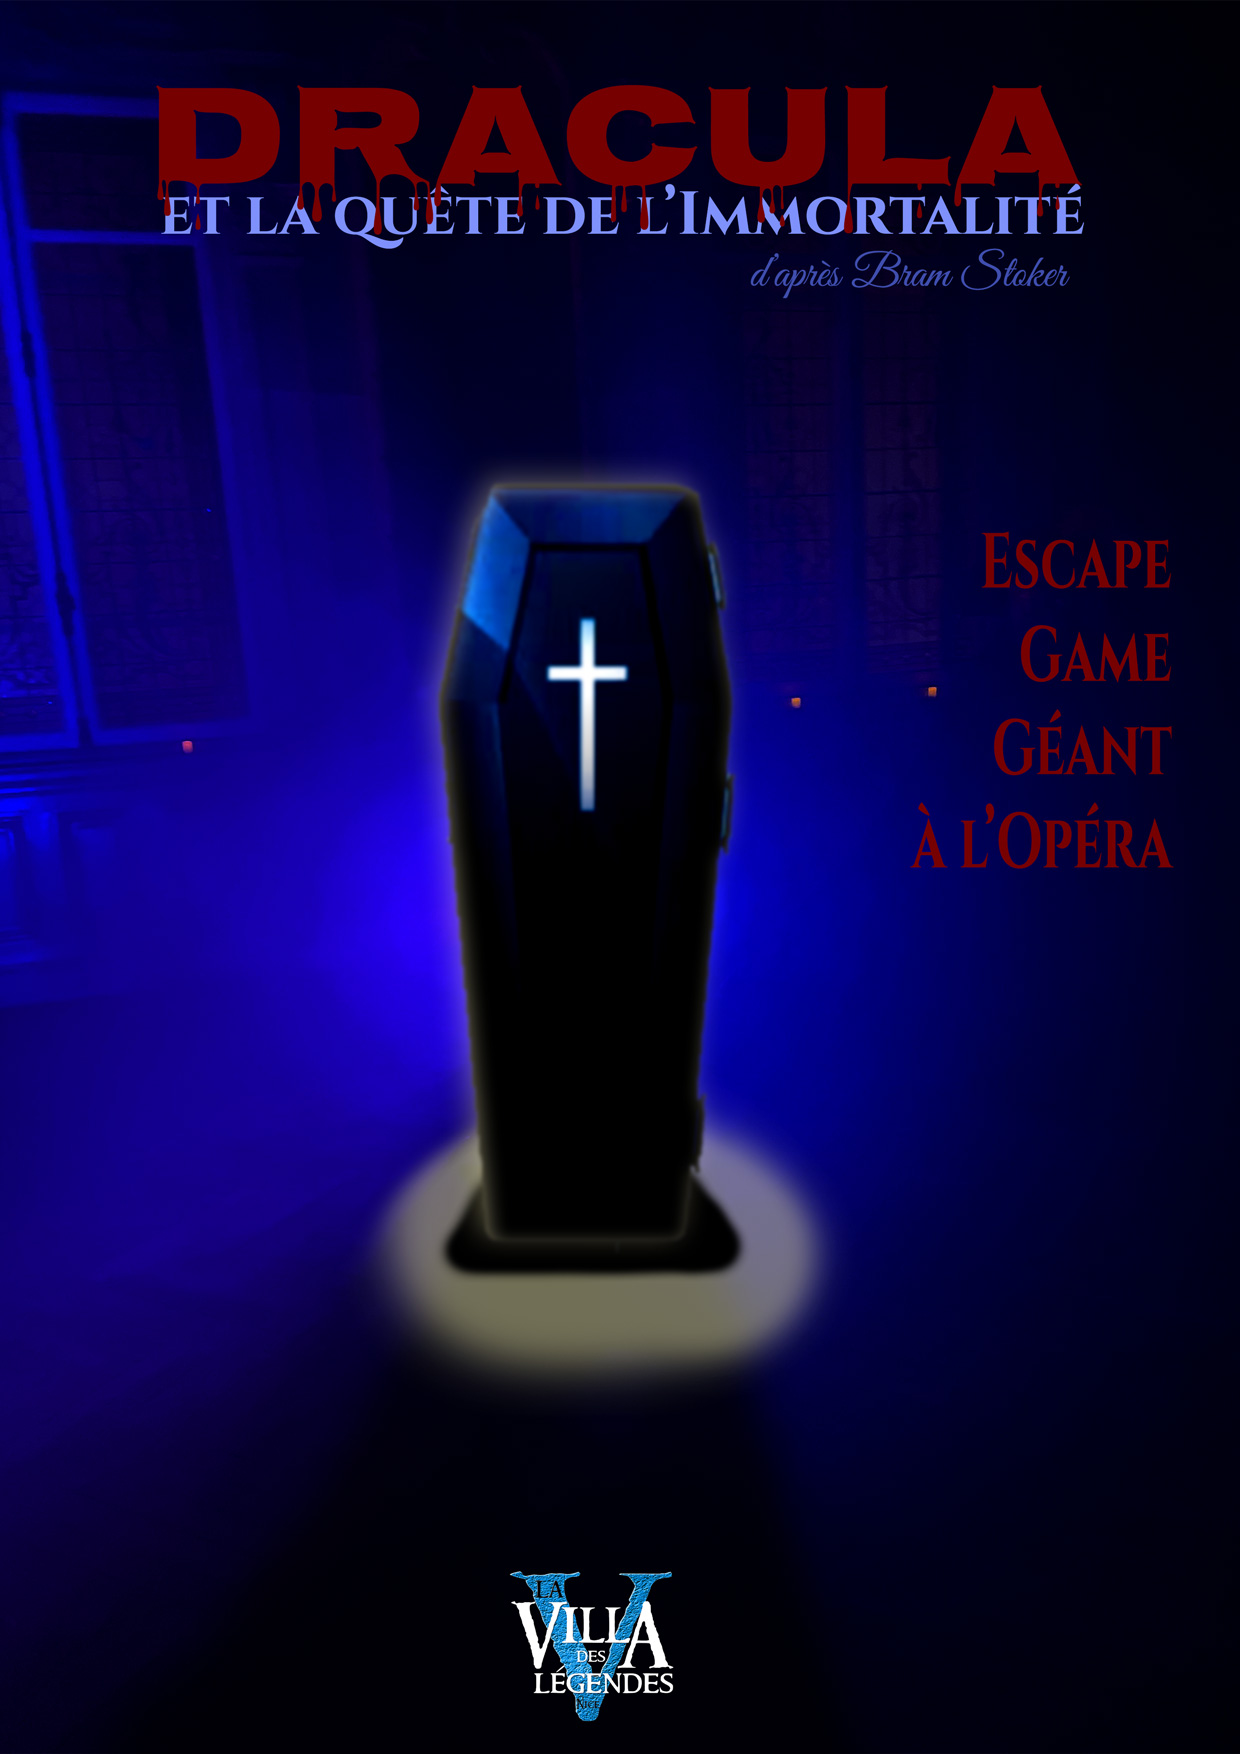 Dracula : Escape Game immersif à l'Opéra de Nice